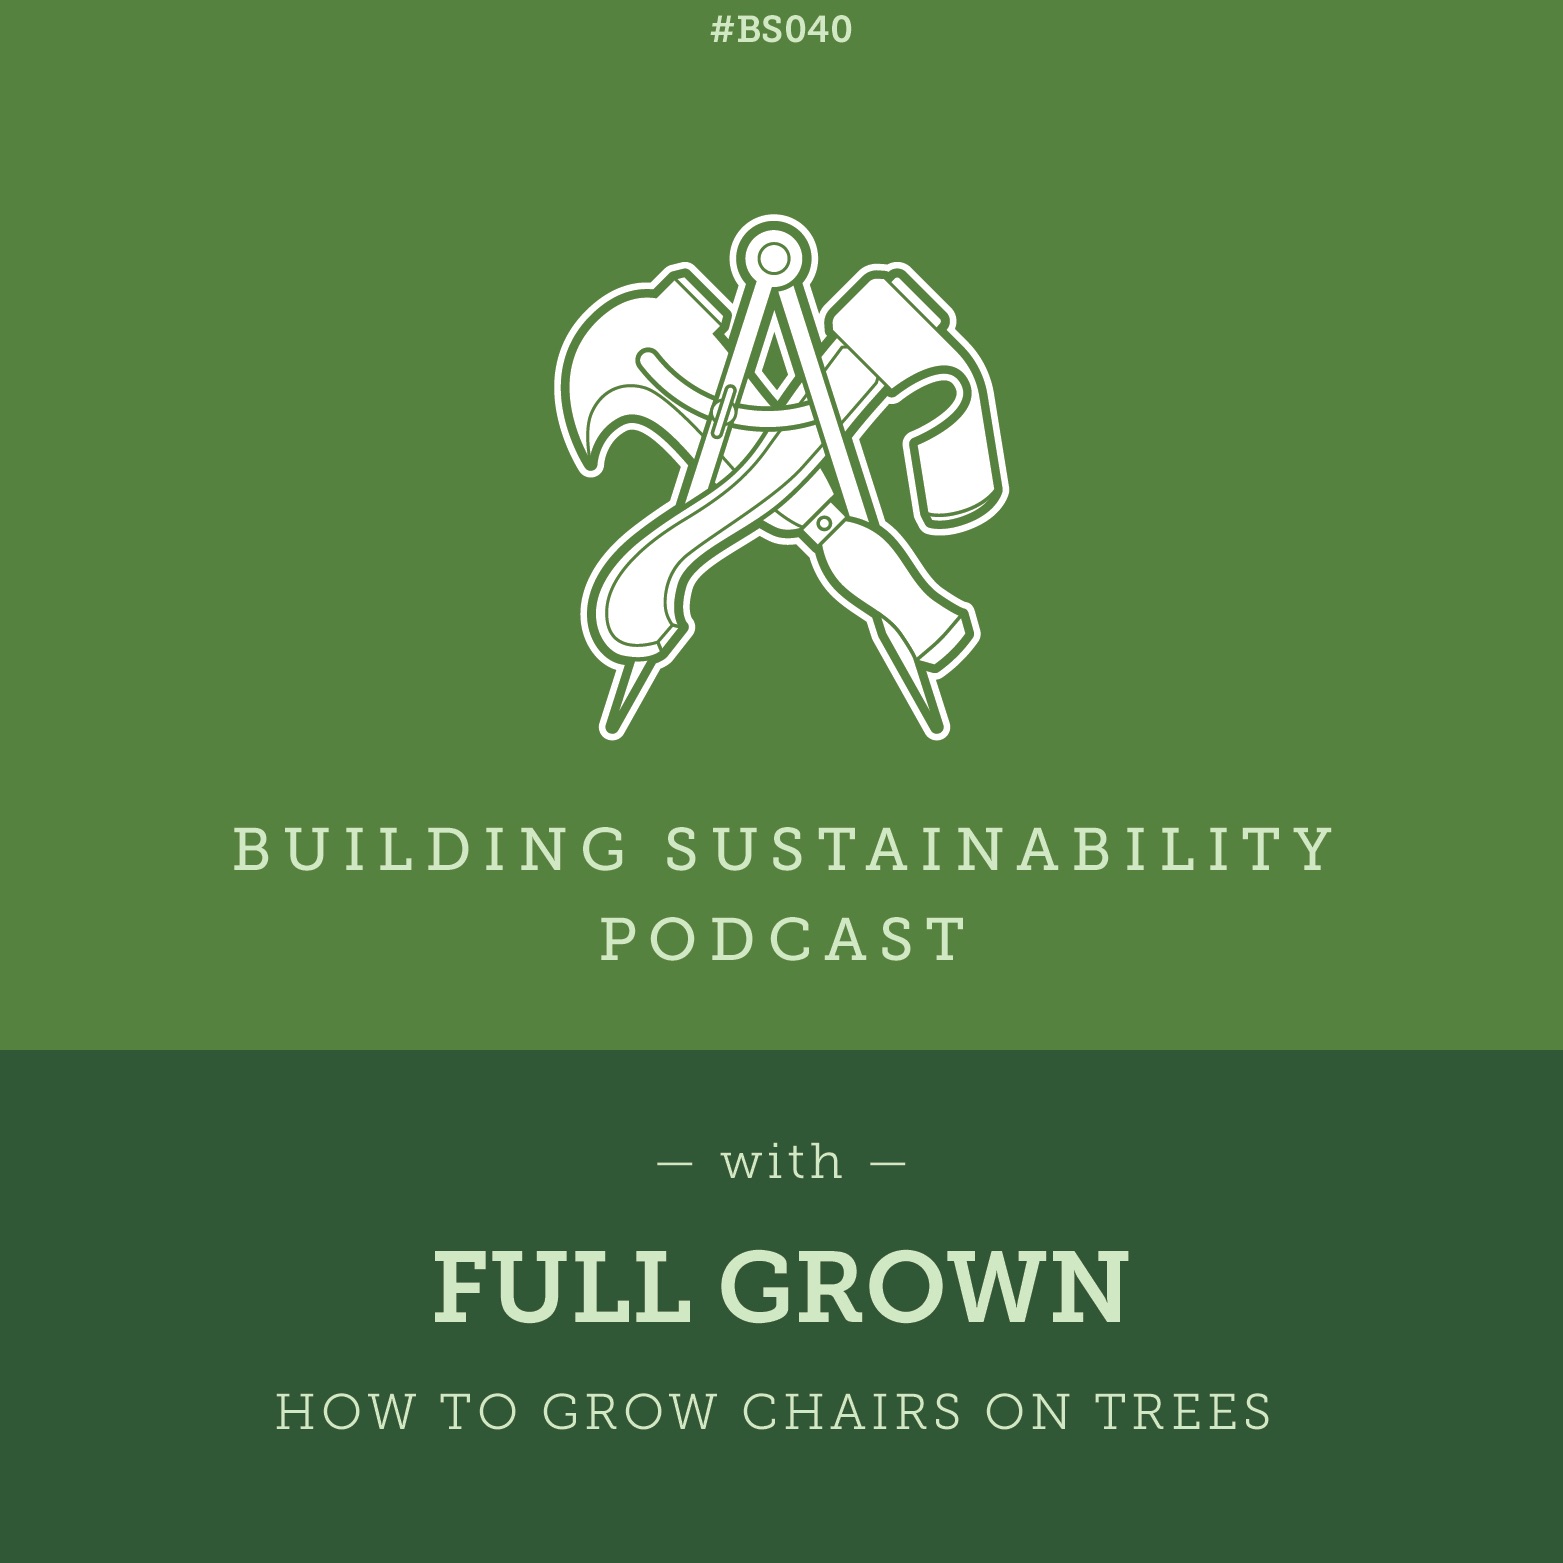 Building Sustainability podcast image